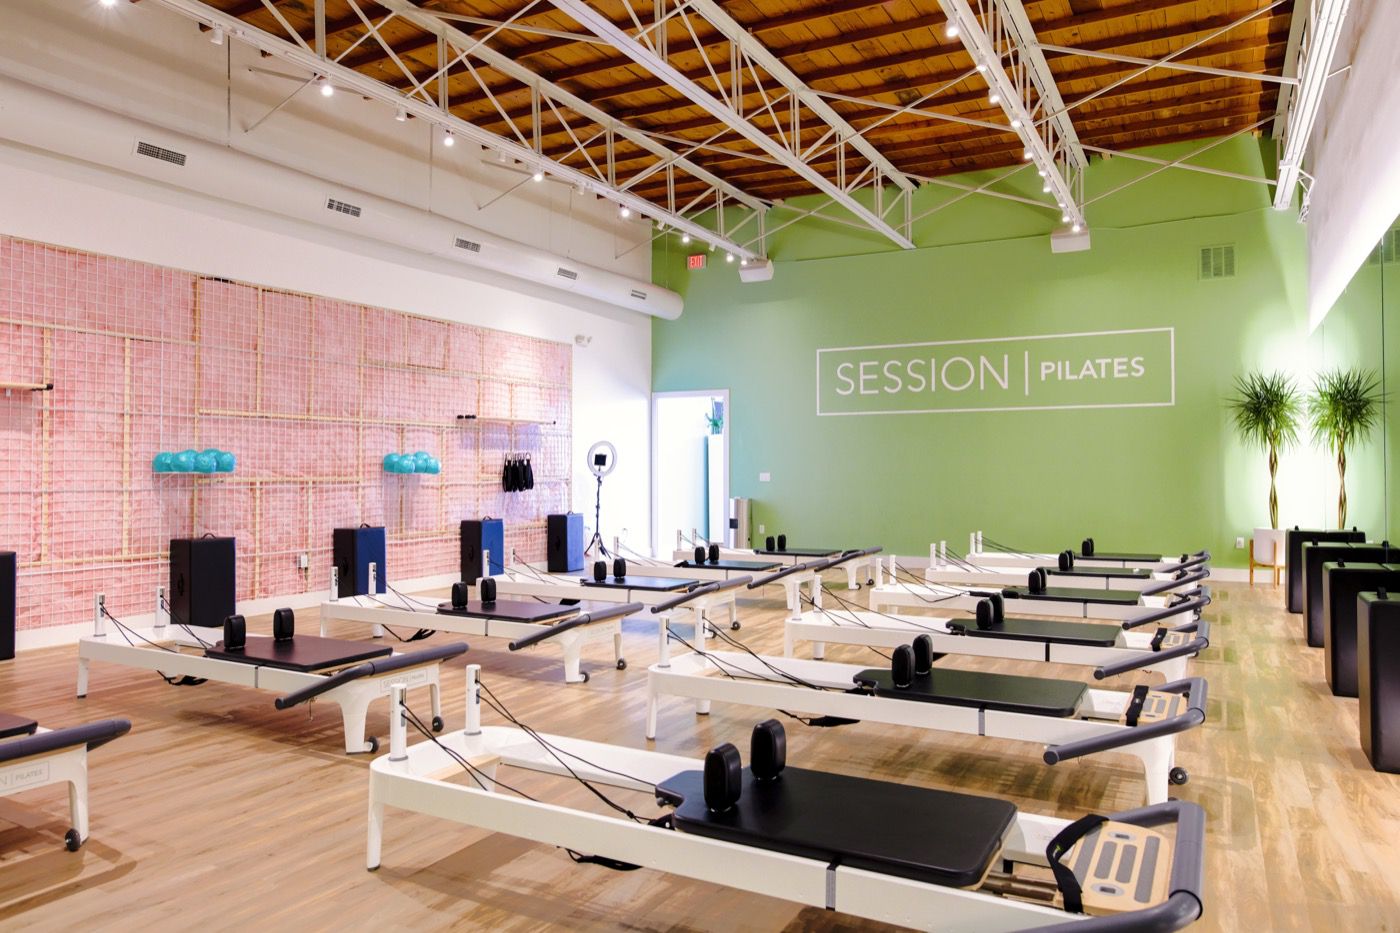 Pilates Lovers  Encuentra los mejores centros de pilates en tu ciudad